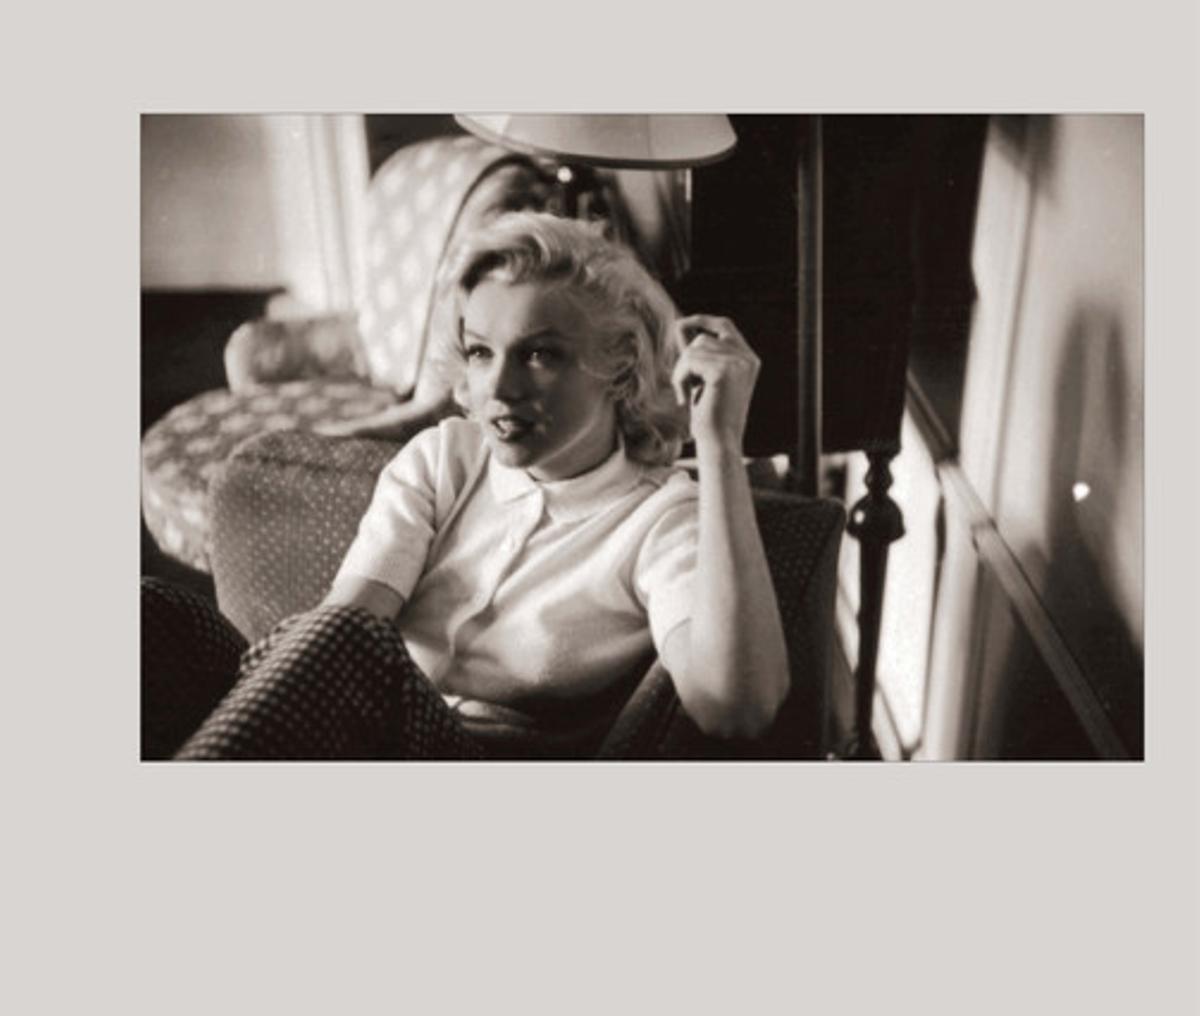 Imagen del libroMarilyn: agosto de 1953, publicado por Calla Editions, que incluye un centenar de fotos inéditas de la actriz. Todas las imágenes del libro fueron tomadas durante el verano de 1953 en Alberta, Canadá, cuando la actriz tenía 27 años.